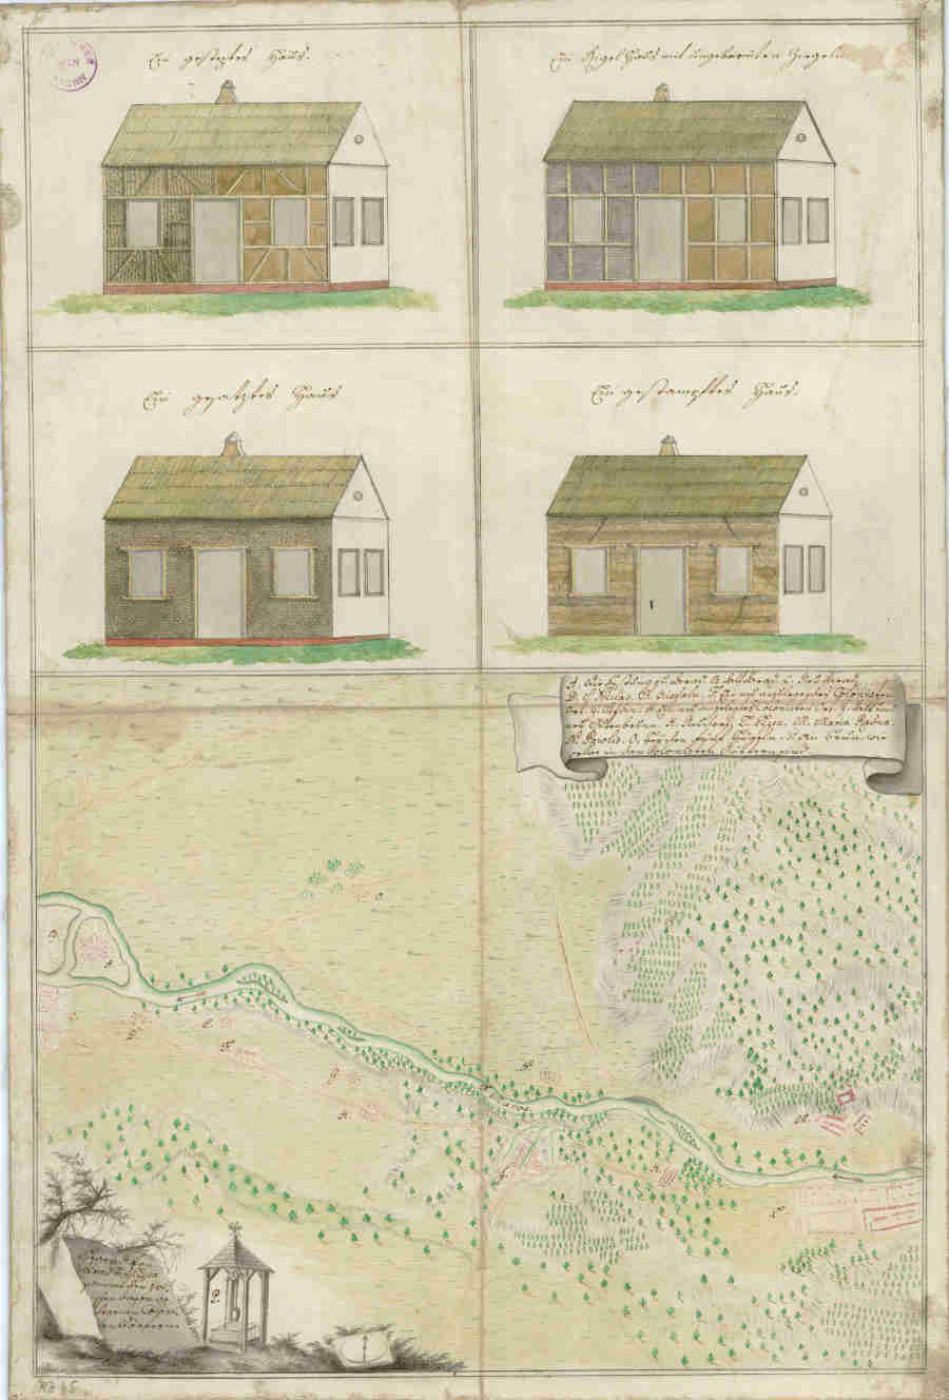 Pläne verschiedener Typen von Kolonistenhäusern mit einer Karte der Gegend zwischen Arad und Lippa, Banat; um 1766